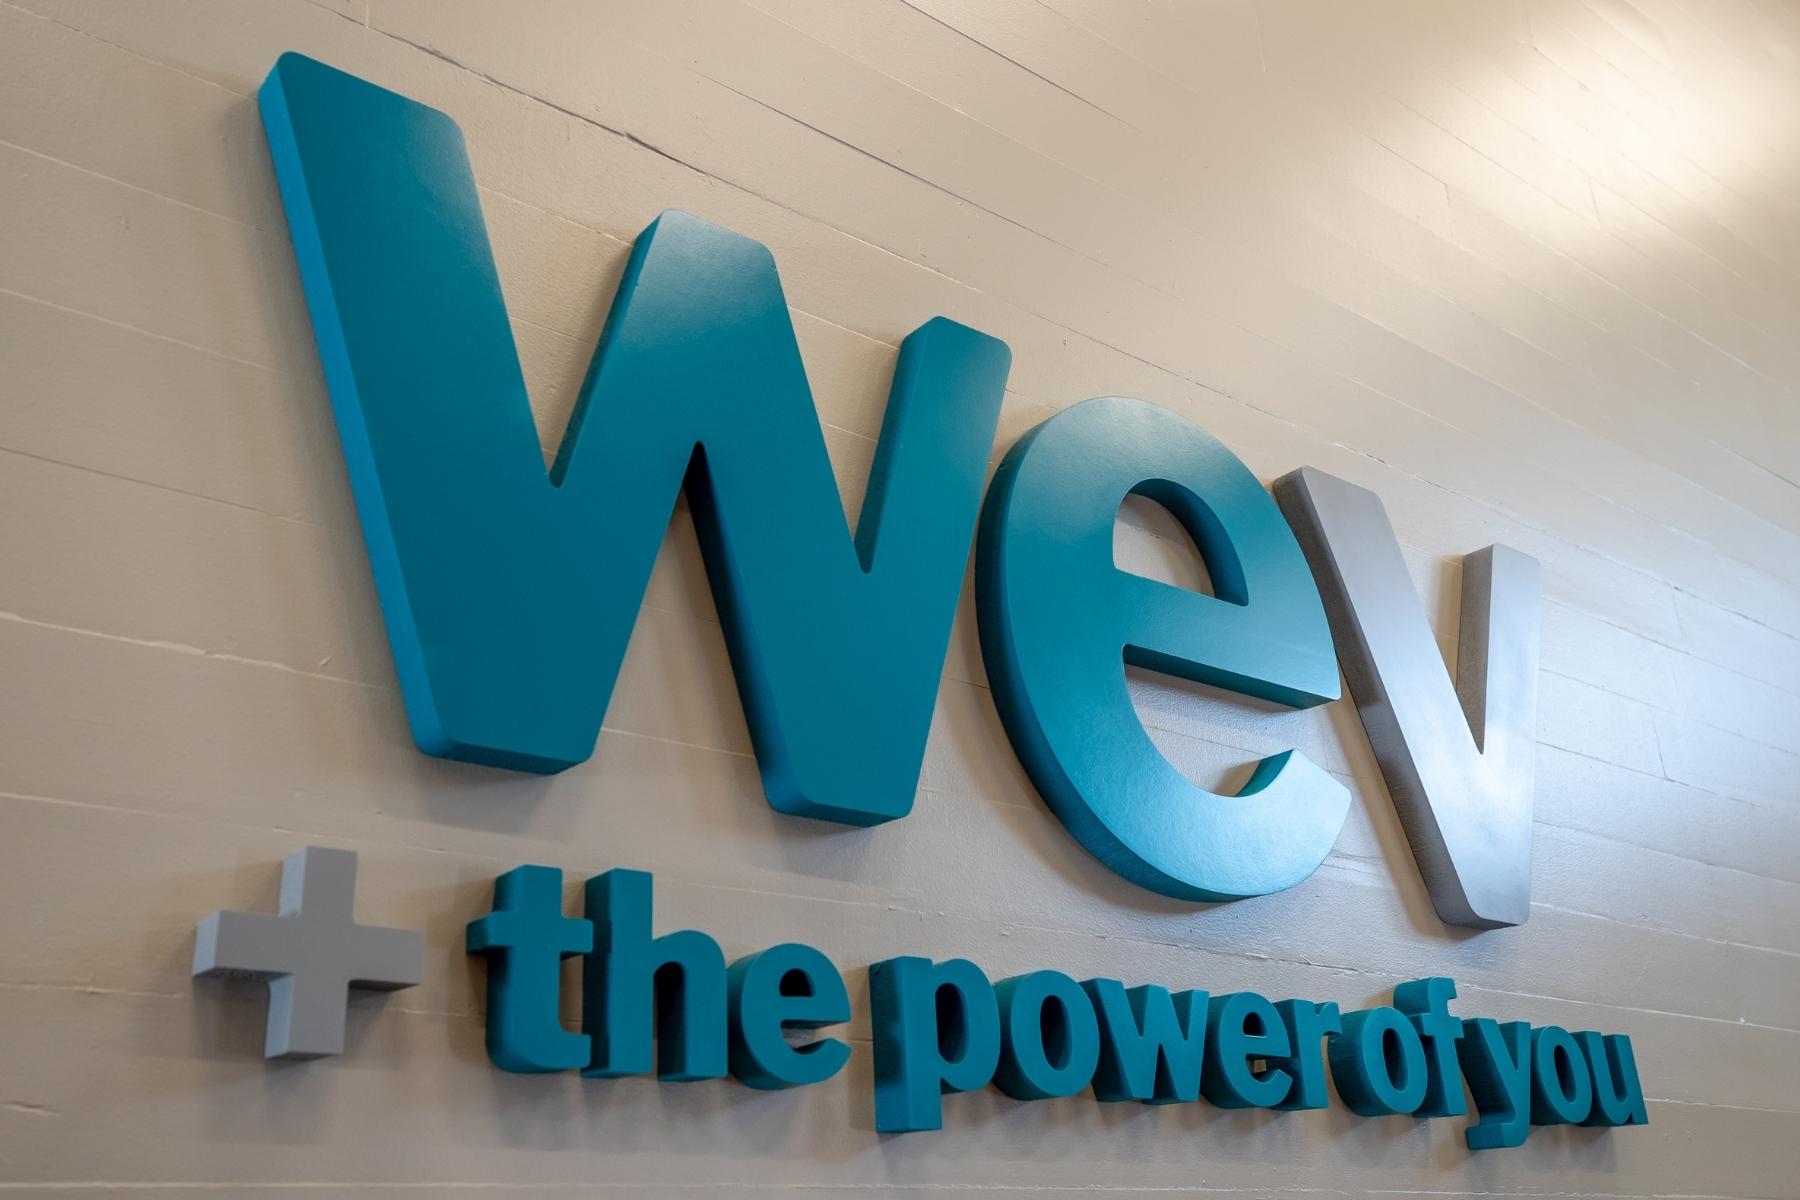 El logotipo en la pared del Centro Comunitario de Santa Bárbara dice WEV + the Power of You